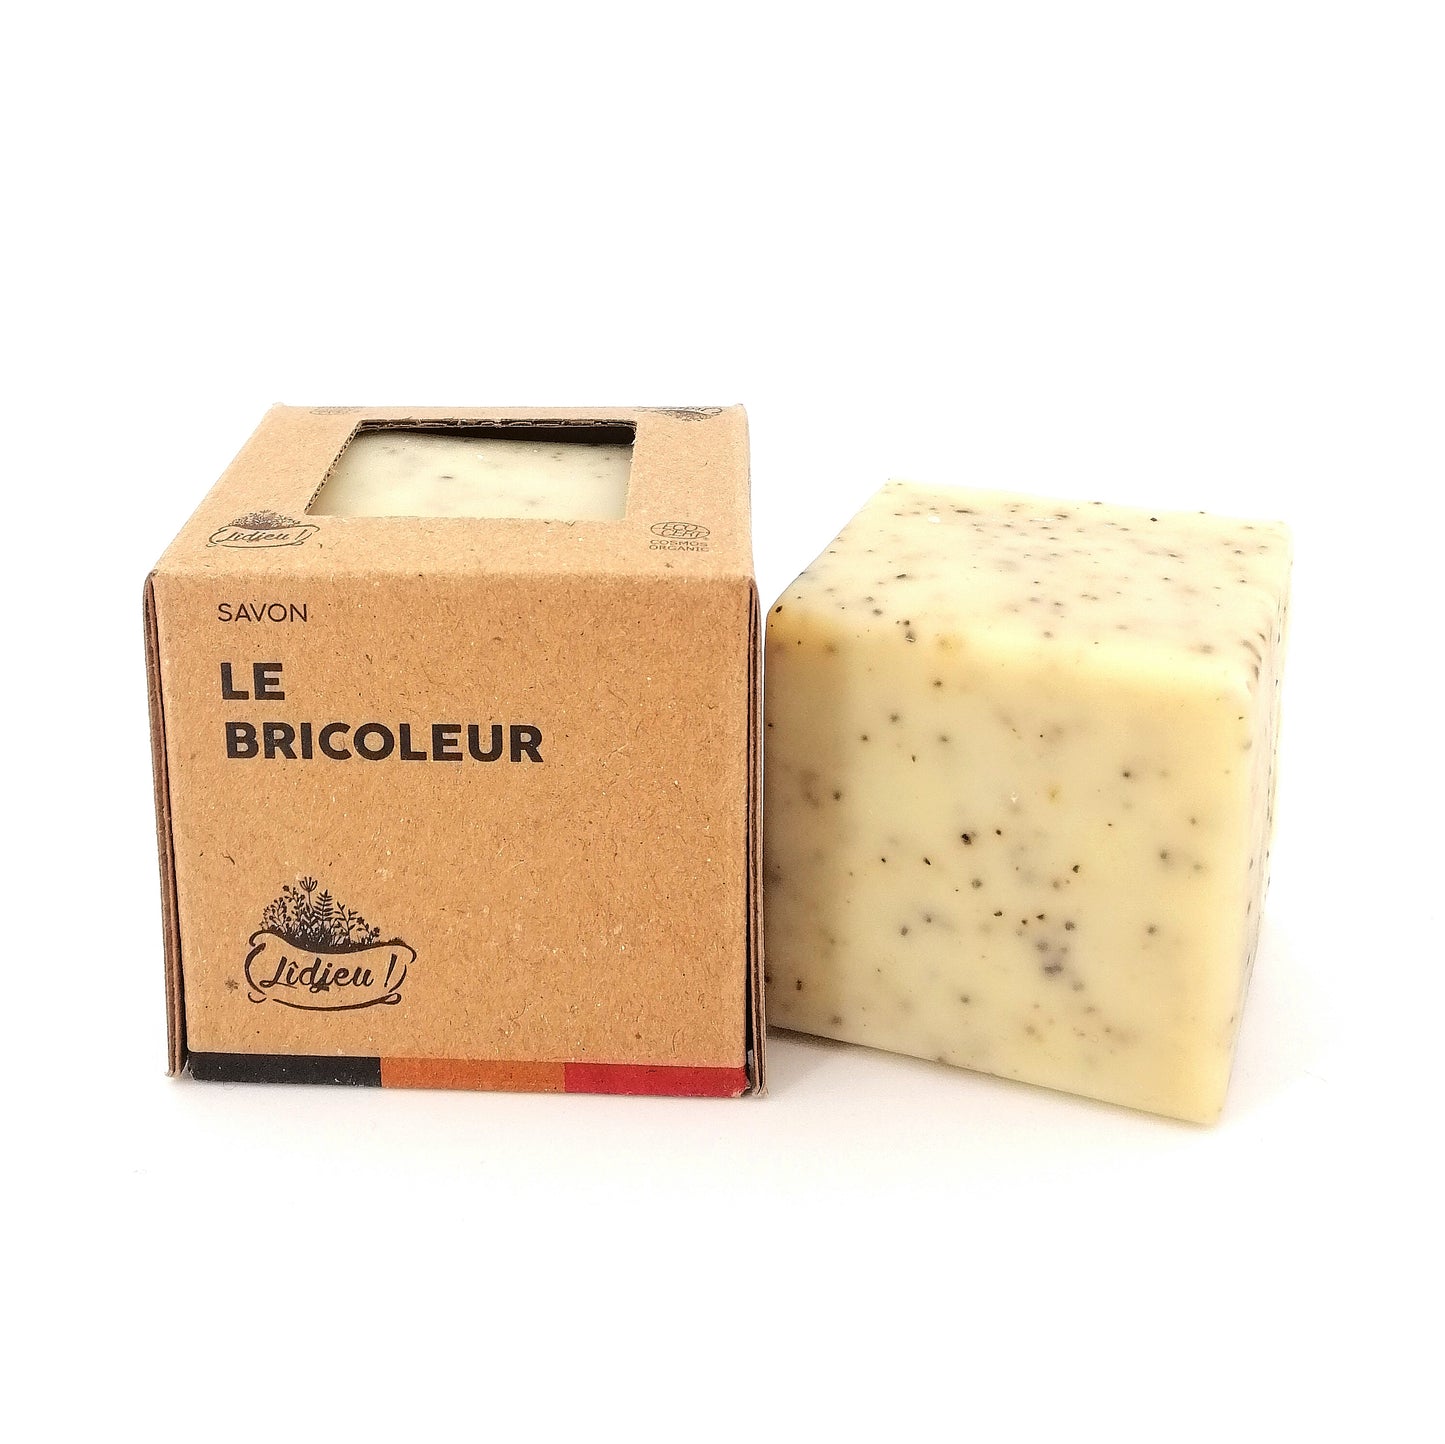 Le Bricoleur (savon naturel et bio très exfoliant au marc de café et huile de sésame)